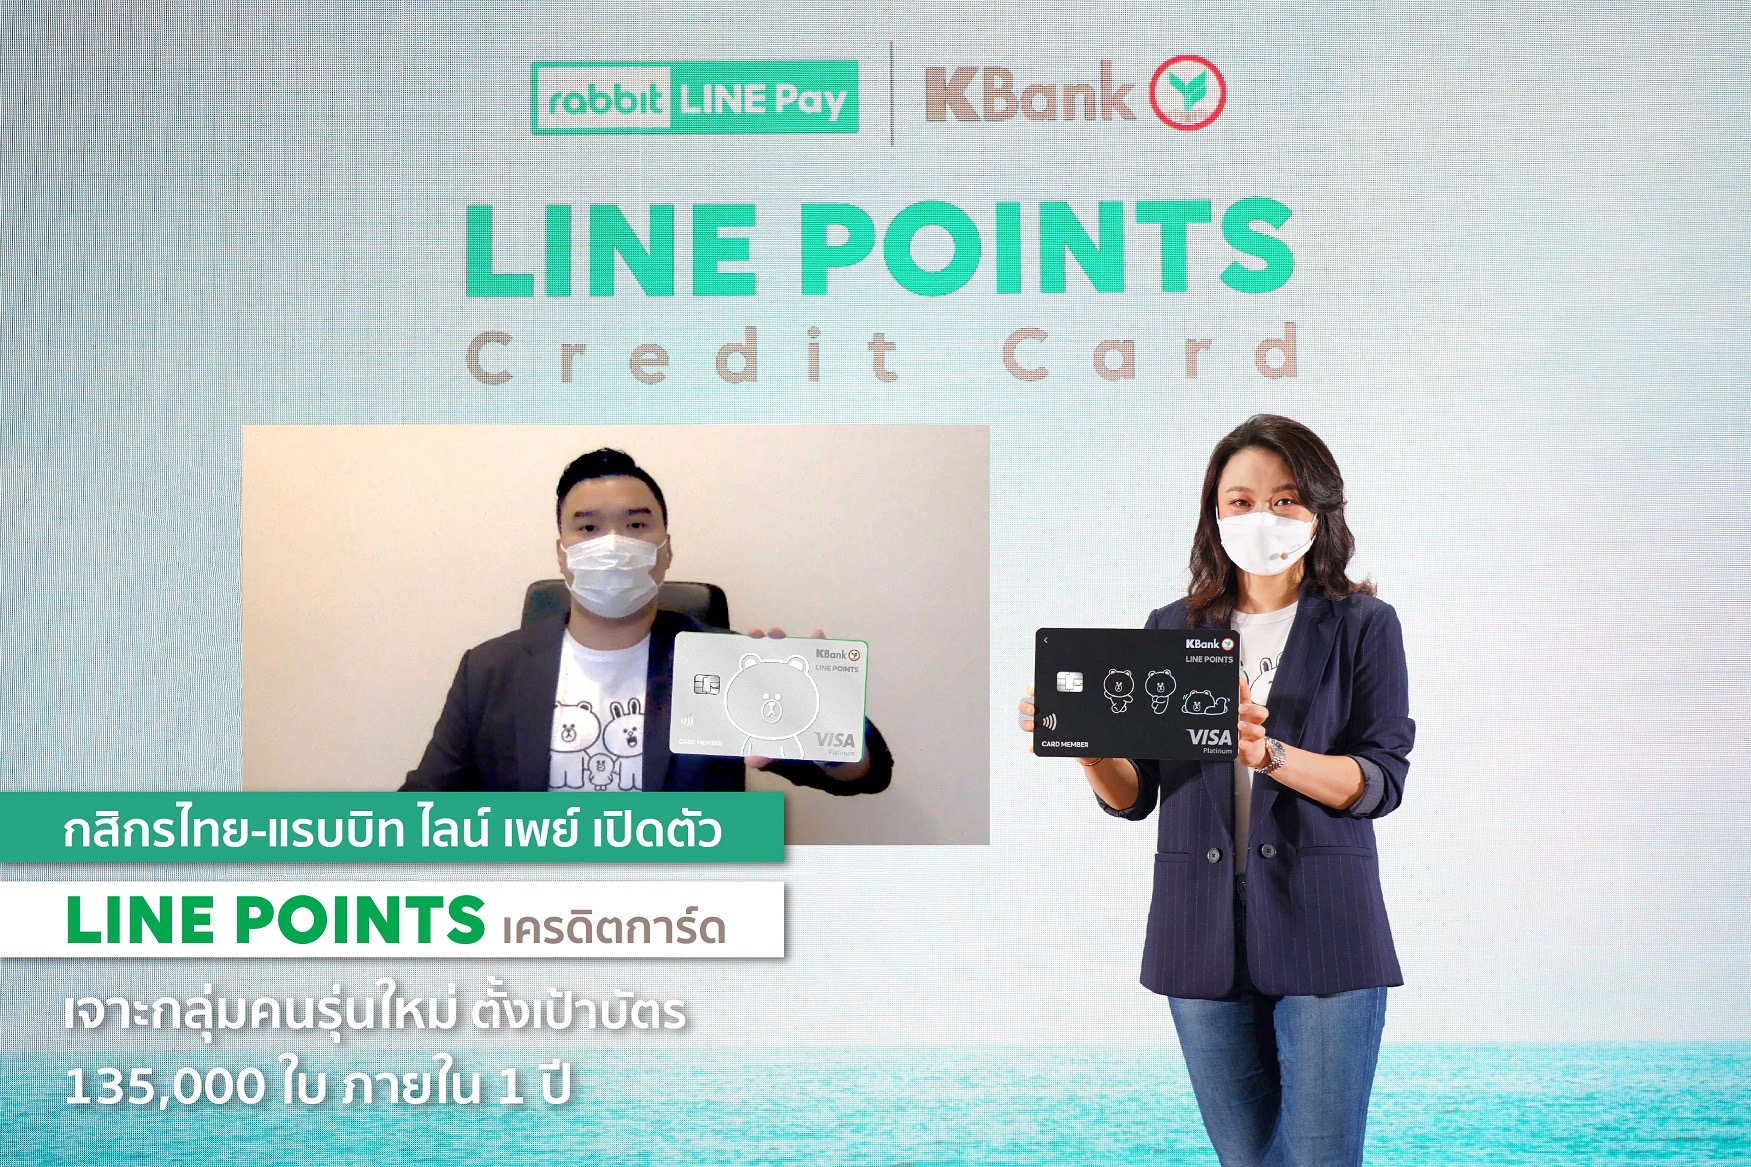 กสิกรไทย ผนึก แรบบิท ไลน์ เพย์ เปิดตัว “LINE POINTS เครดิตการ์ด” เจาะกลุ่มคนรุ่นใหม่ ตั้งเป้าบัตร 135,000 ใบ ภายใน 1 ปี